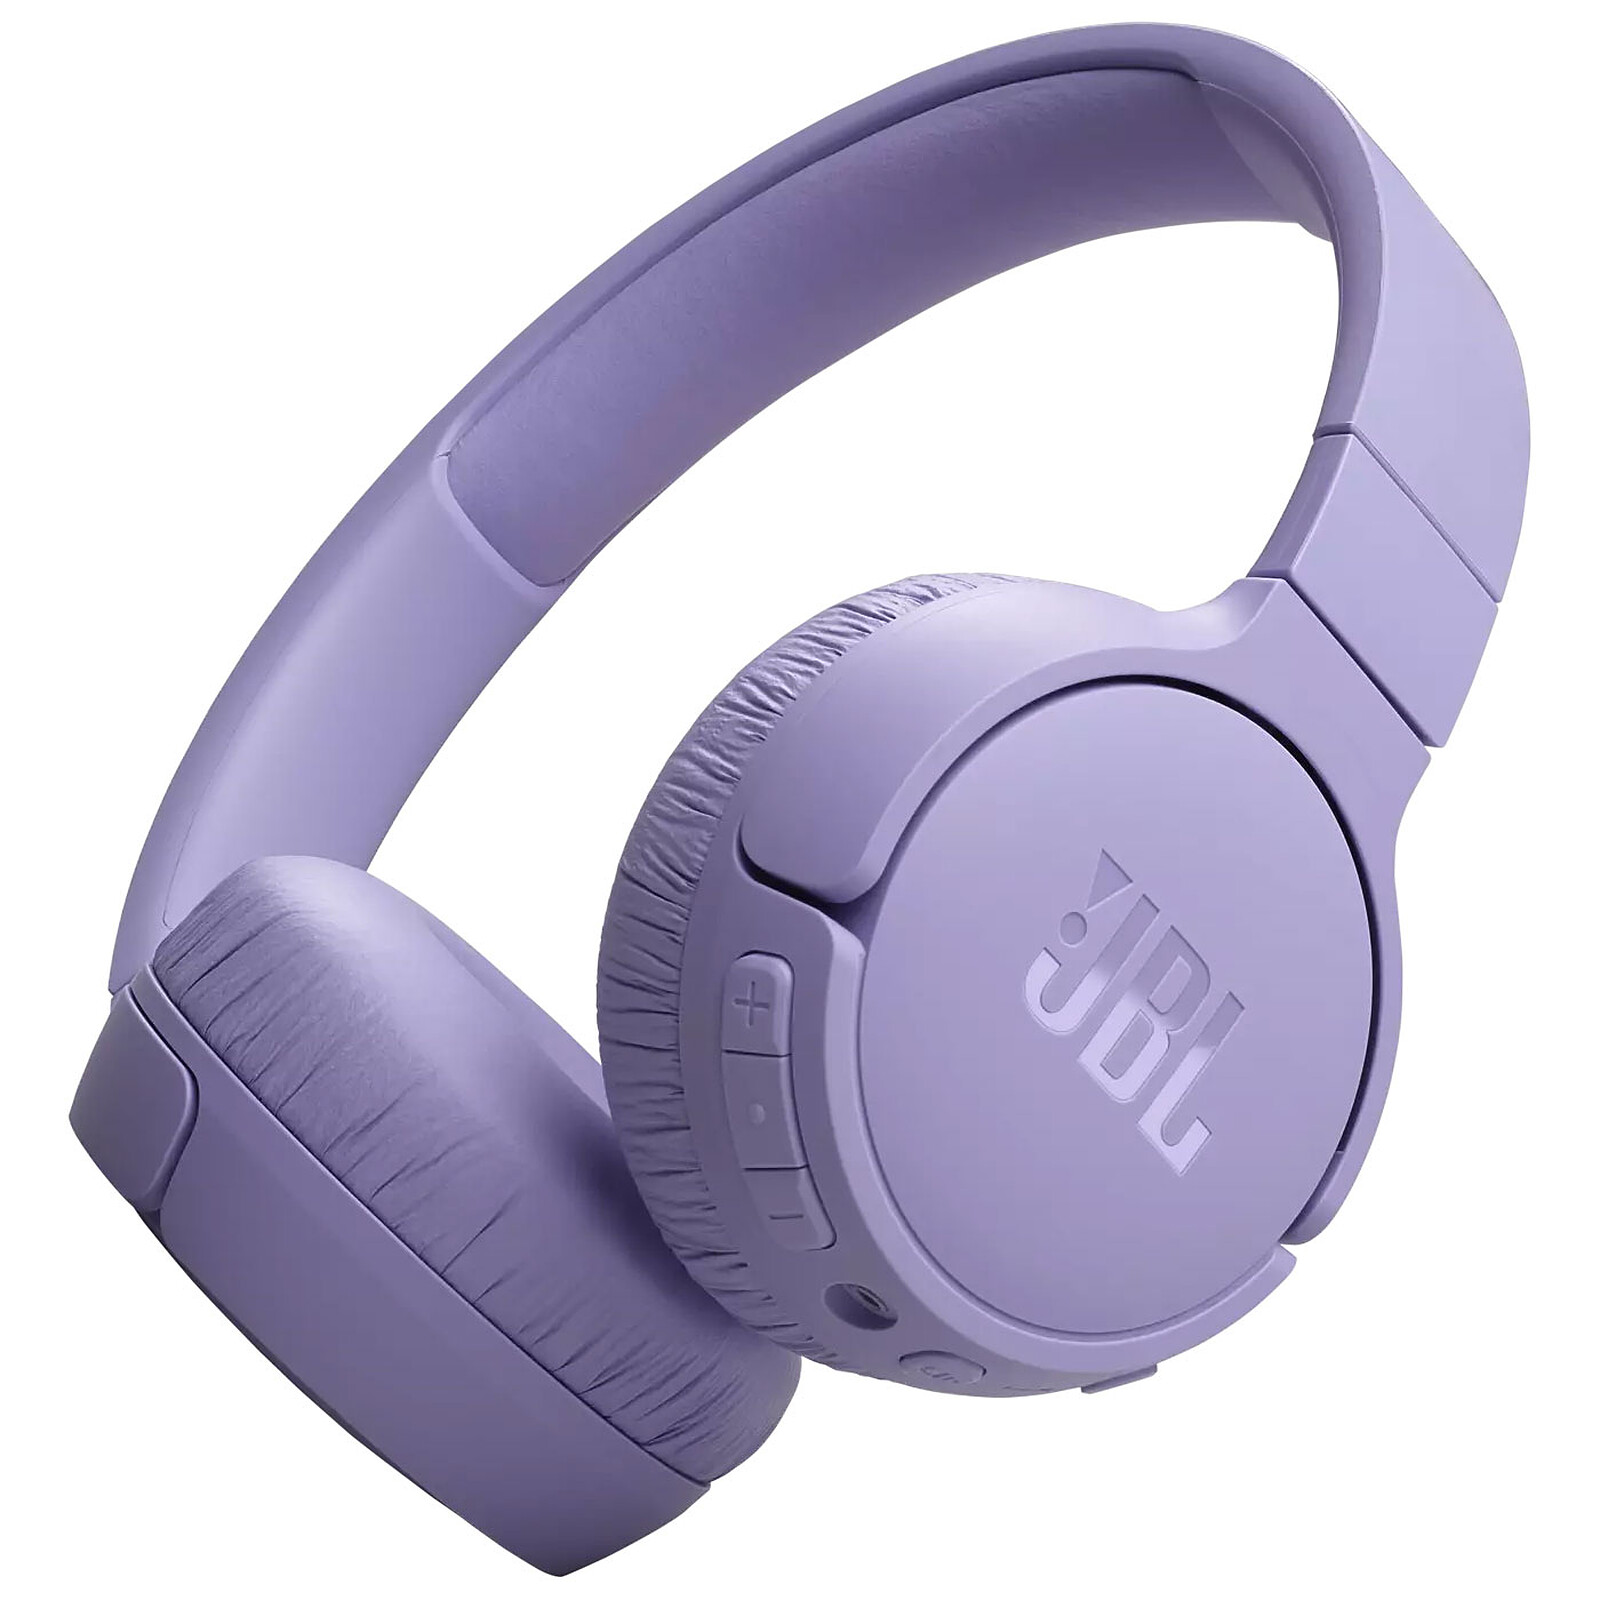 JBL Tune 760nc Bleu casque audio Bluetooth avec réduction du bruit